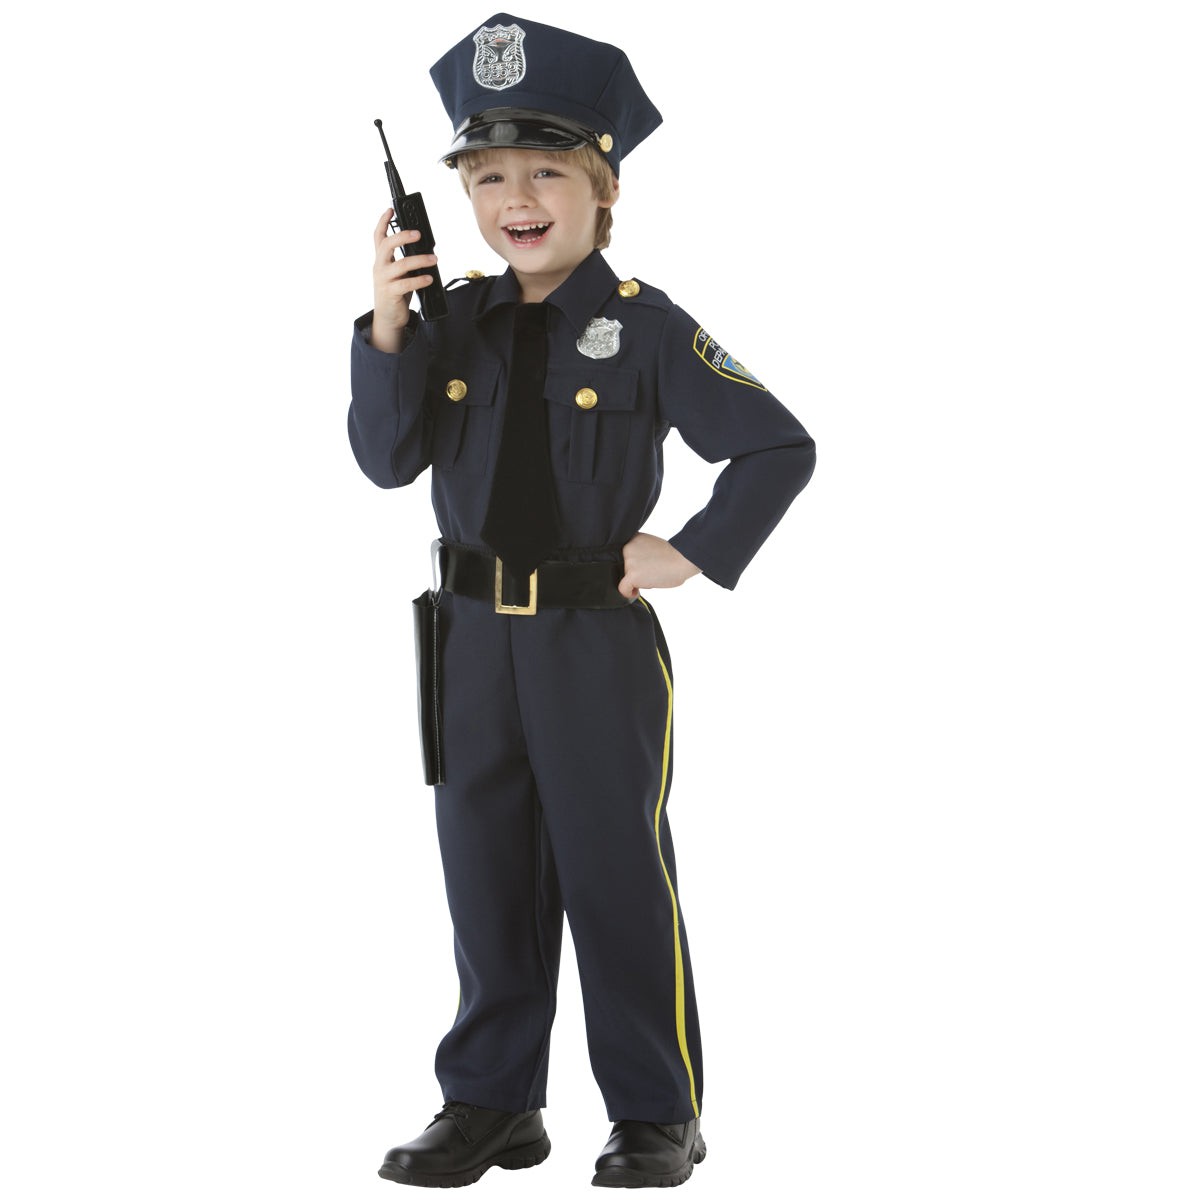 Kit policier enfants